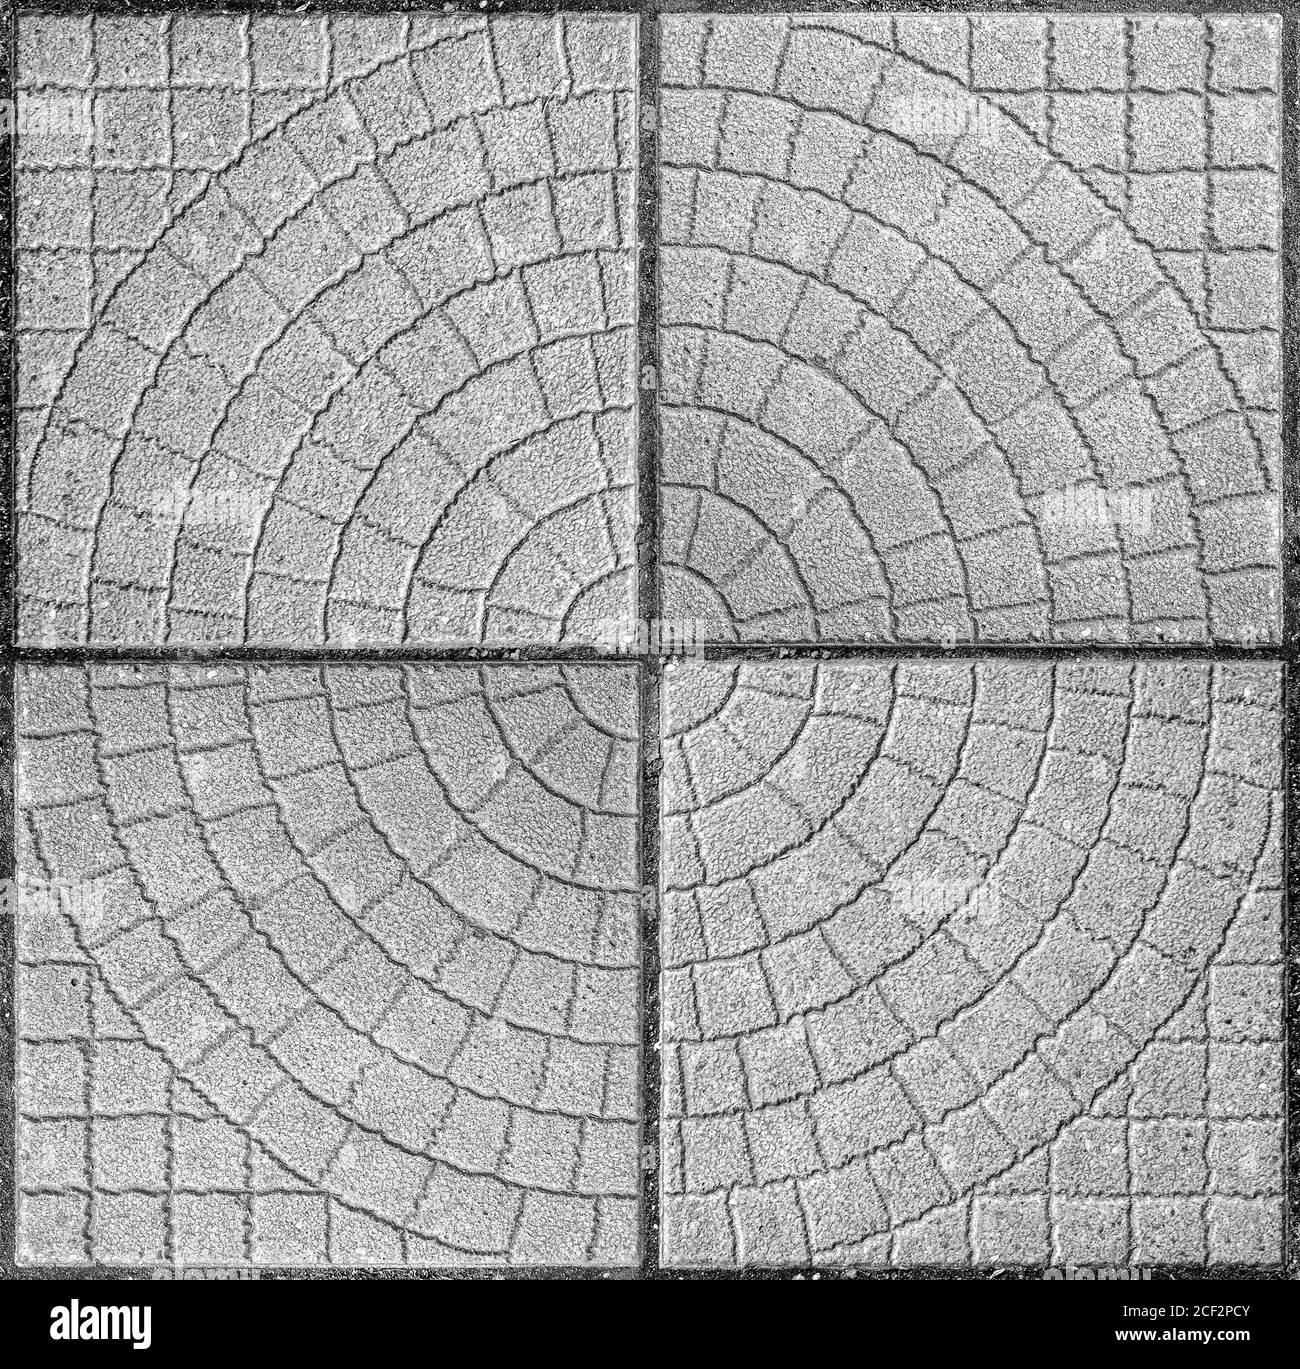 strada lastricata con piastrelle marciapiede. bello sfondo in mattoni con, struttura muraria di mattoni grigio chiaro. esterno closeup Foto Stock